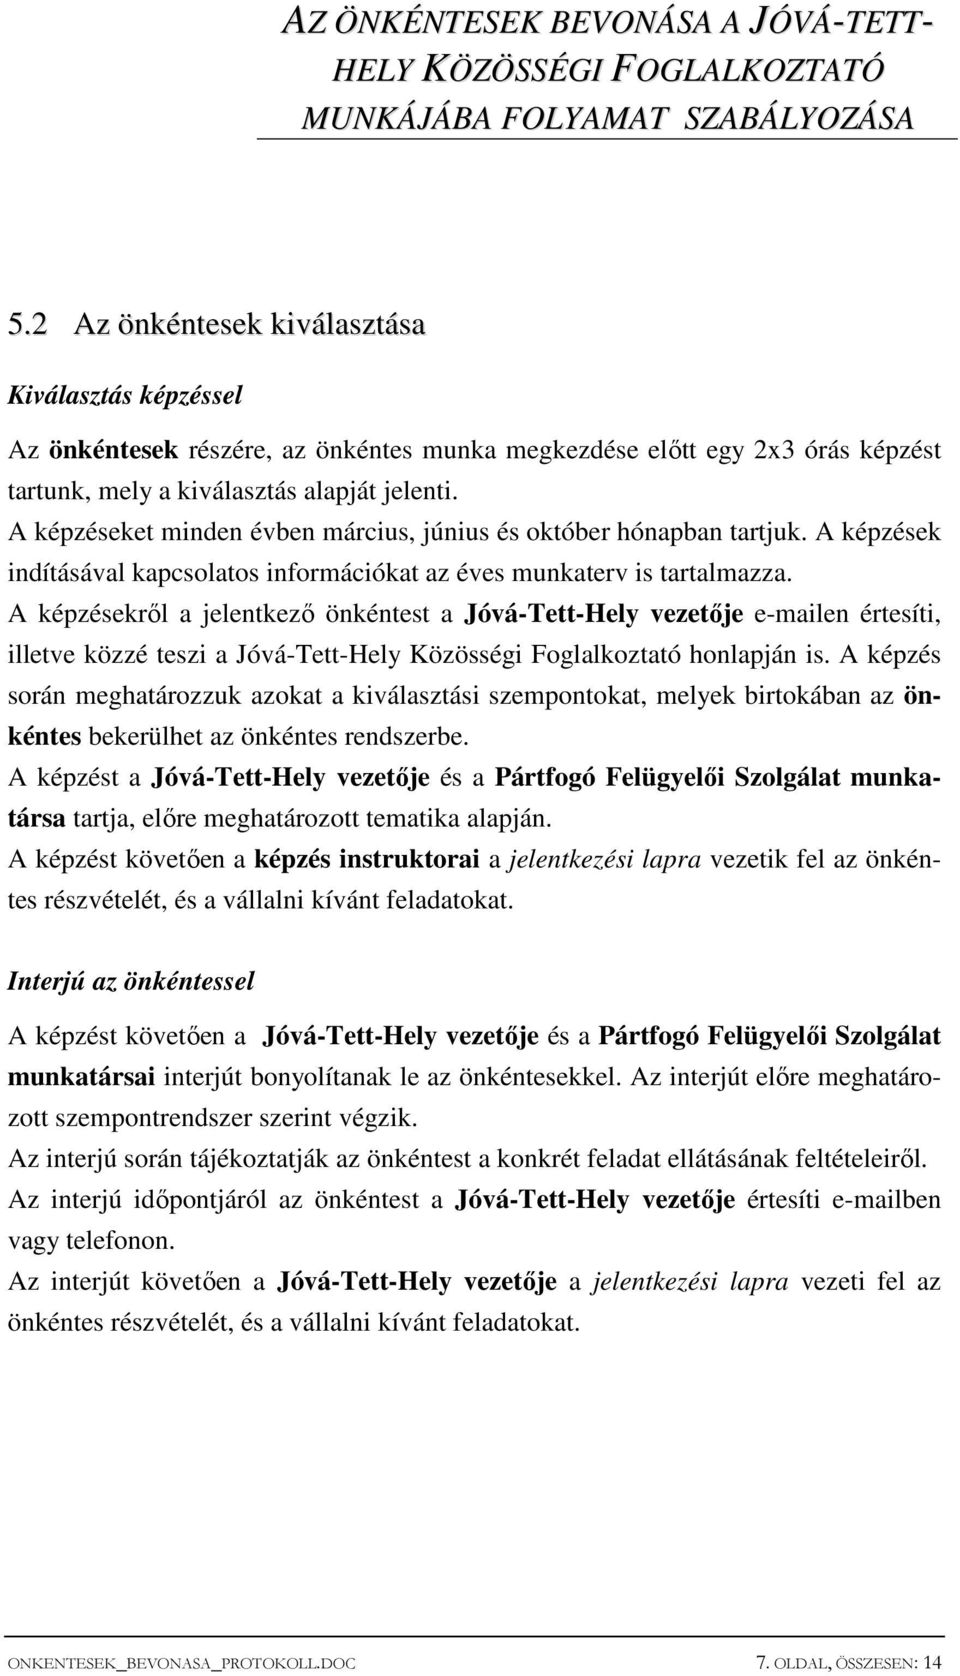 A képzésekrıl a jelentkezı önkéntest a Jóvá-Tett-Hely vezetıje e-mailen értesíti, illetve közzé teszi a Jóvá-Tett-Hely Közösségi Foglalkoztató honlapján is.